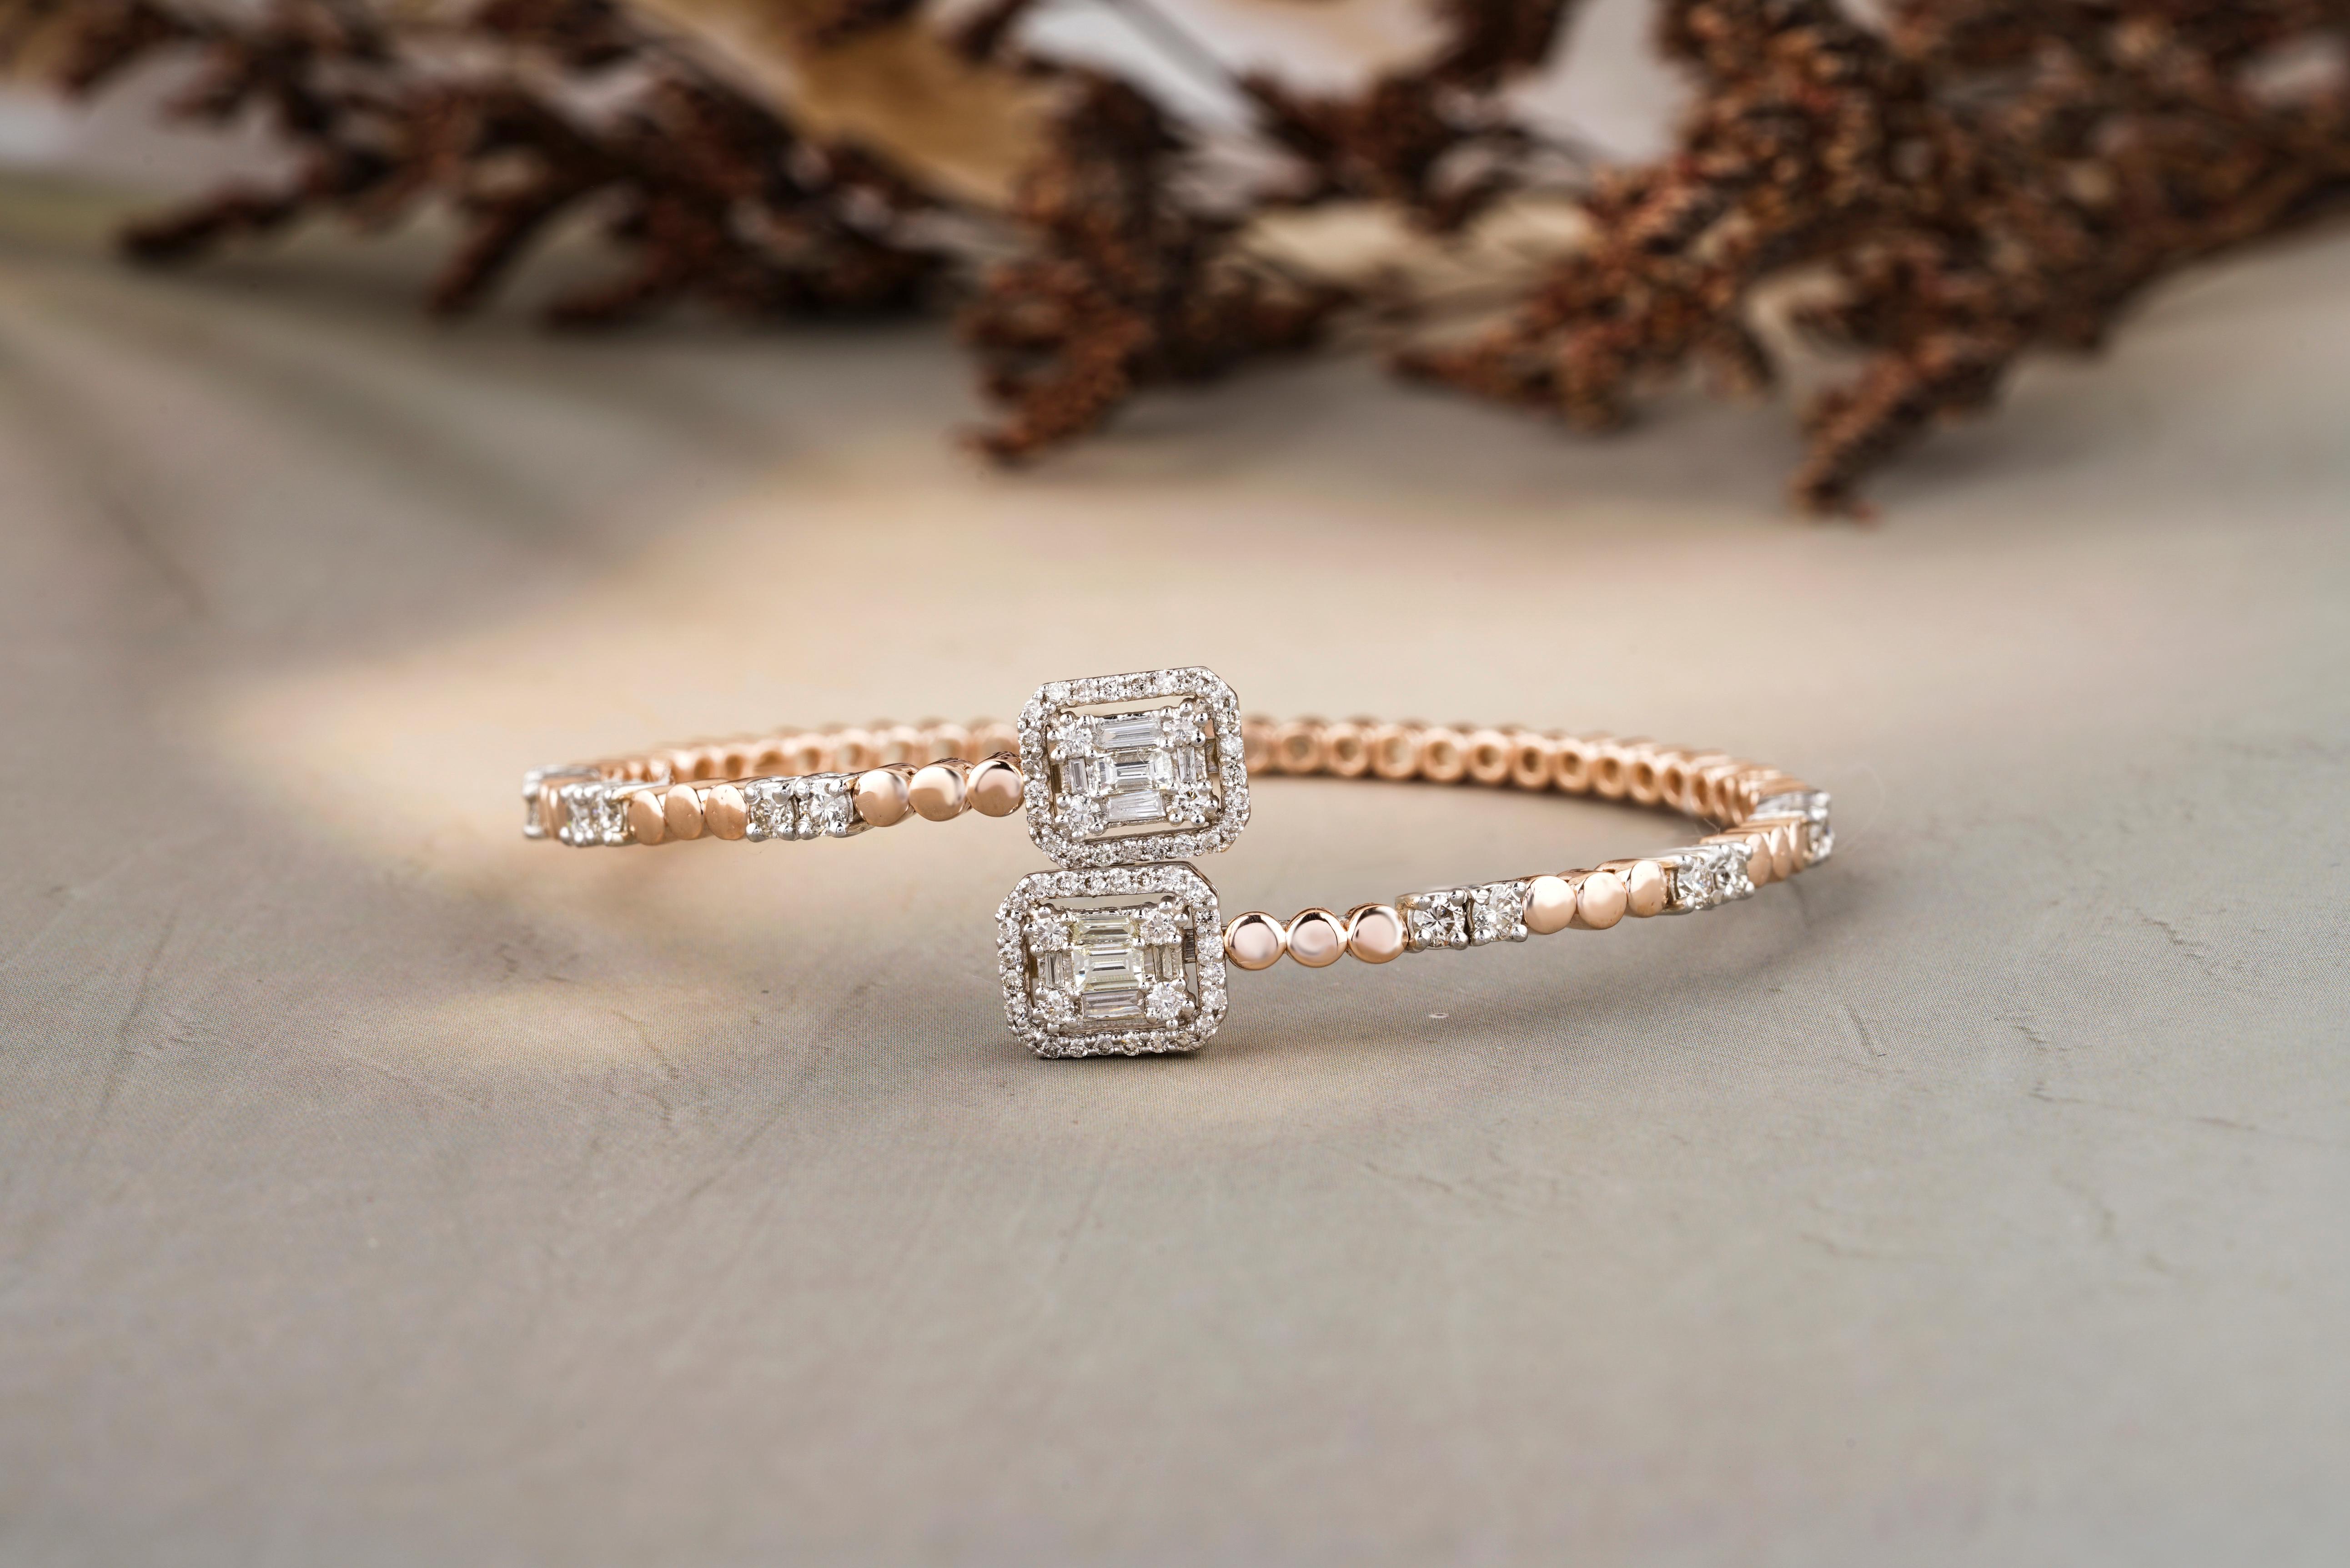 Lassen Sie sich von unserem Bubble Design Halo Diamond Cuff Bracelet verzaubern, einem exquisiten Stück aus glänzendem 18 Karat Massivgold. Das Armband besticht durch seine Illusionsfassung, die einen Halo-Effekt erzeugt, der die Brillanz der